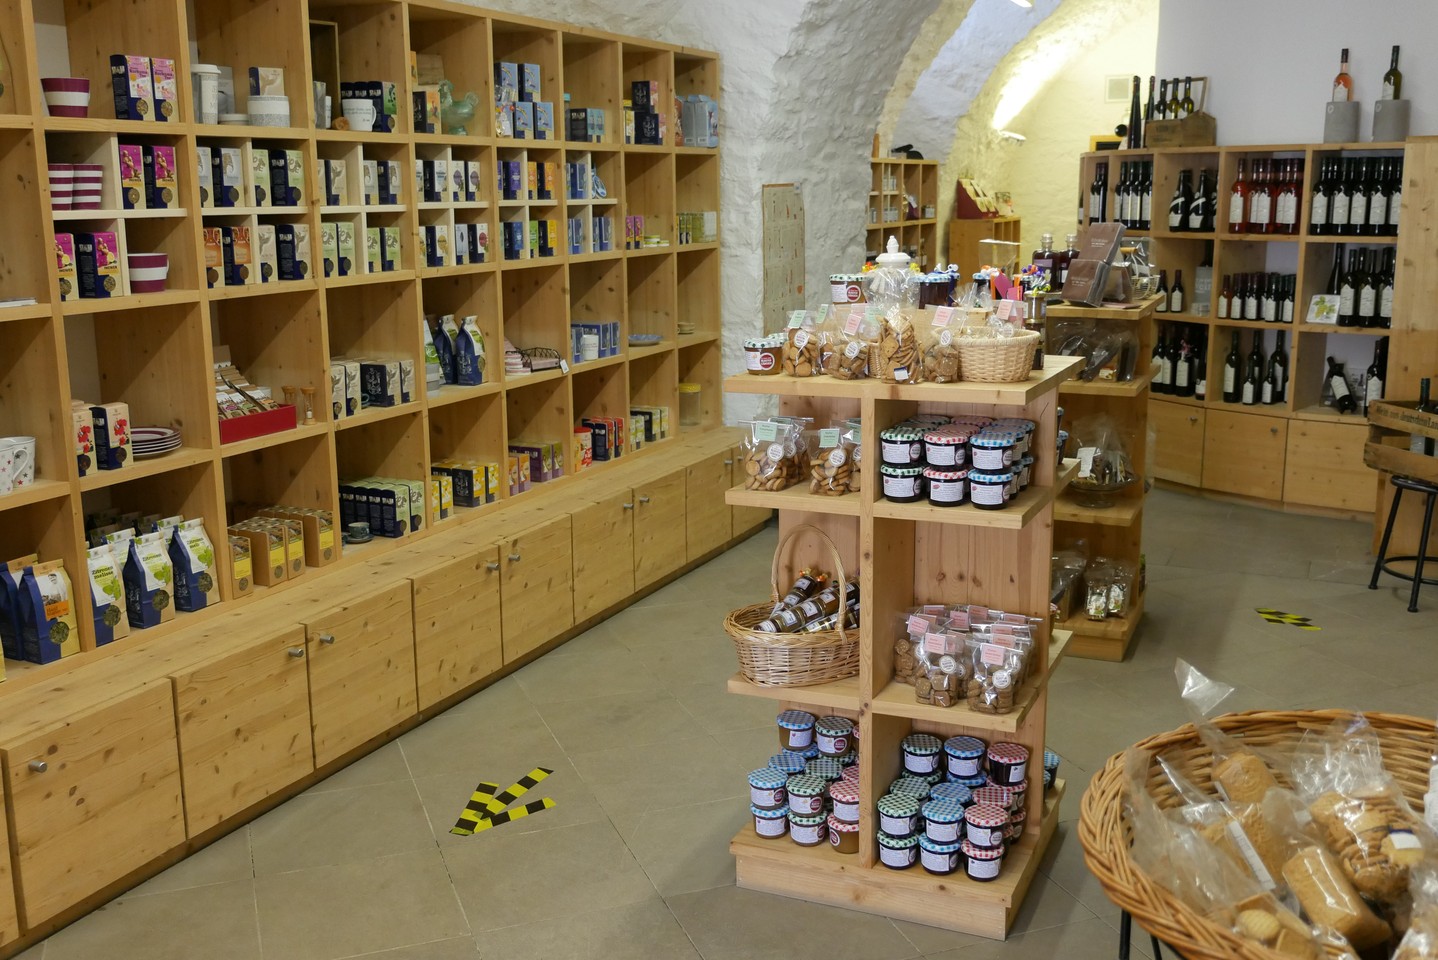 Blick in den Klosterladen mit vielen Produkten in Regalen und auf Tischen.